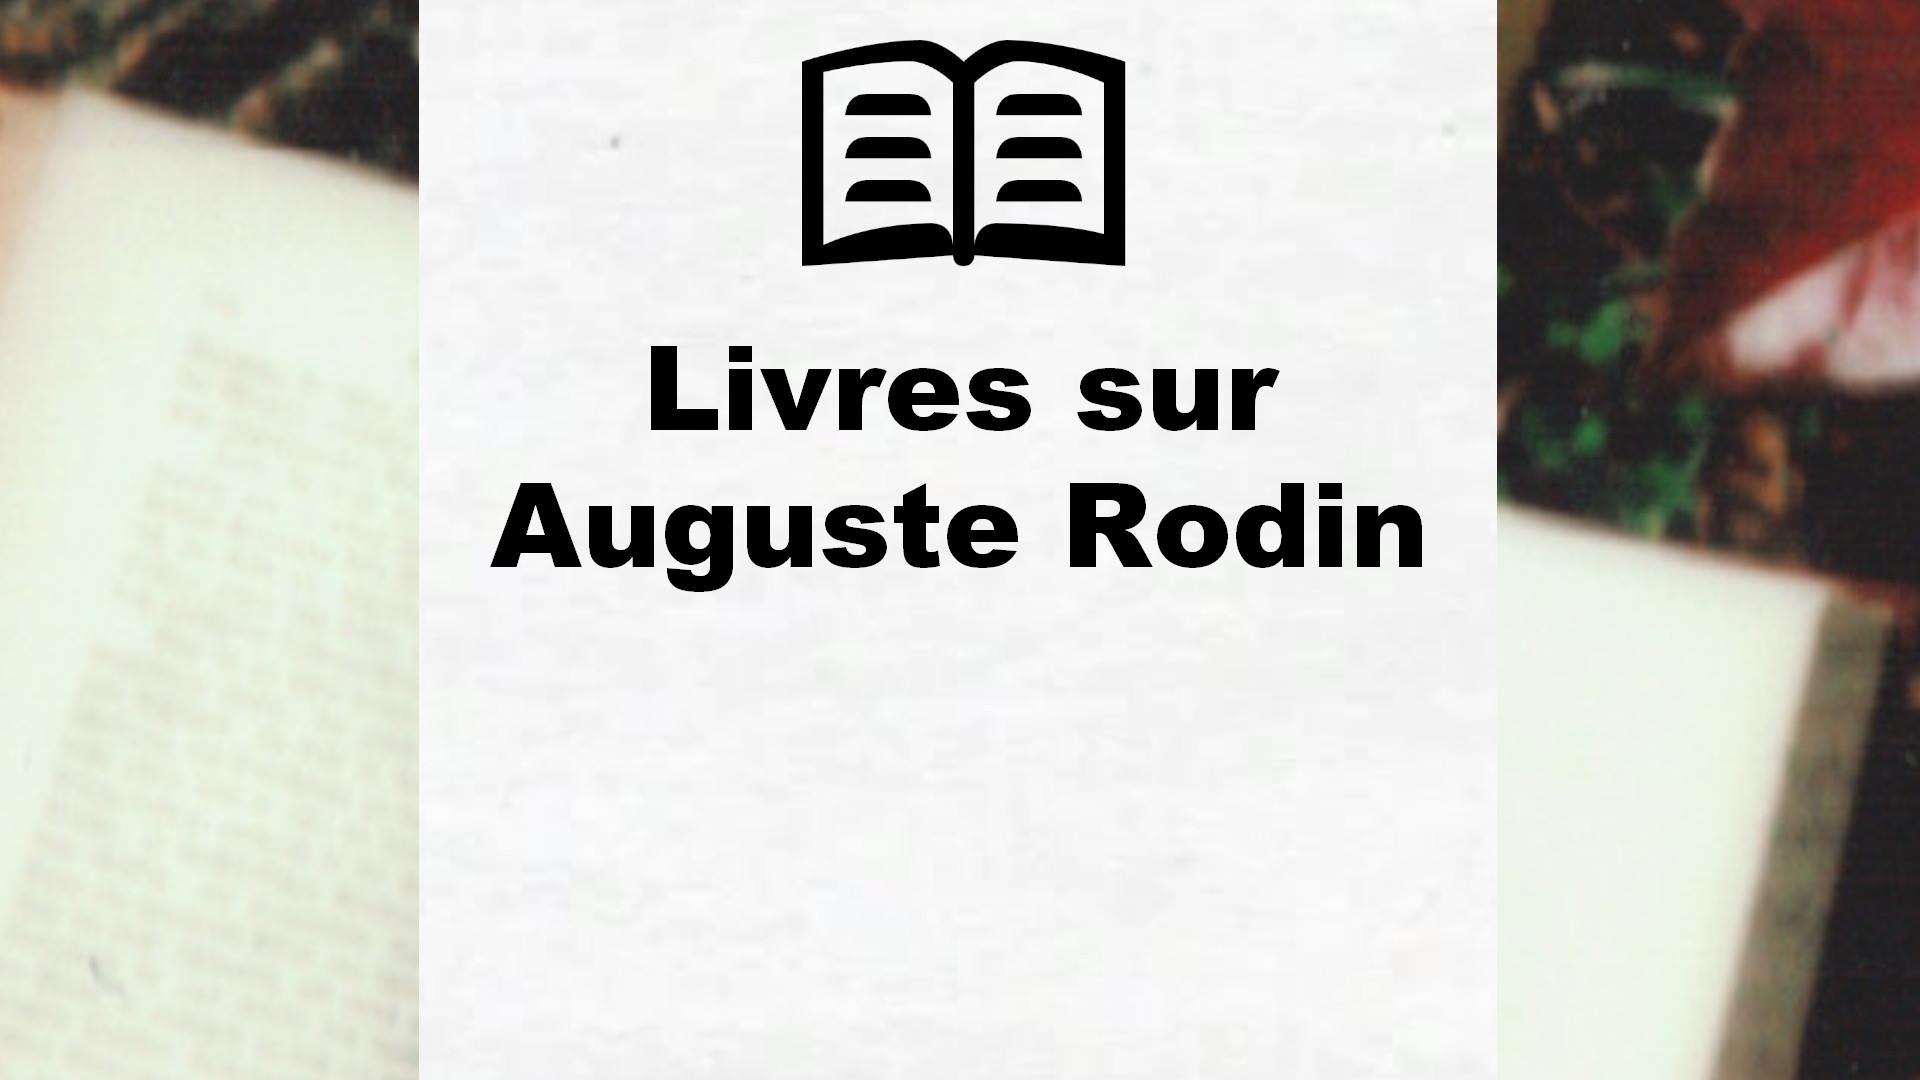 Livres sur Auguste Rodin